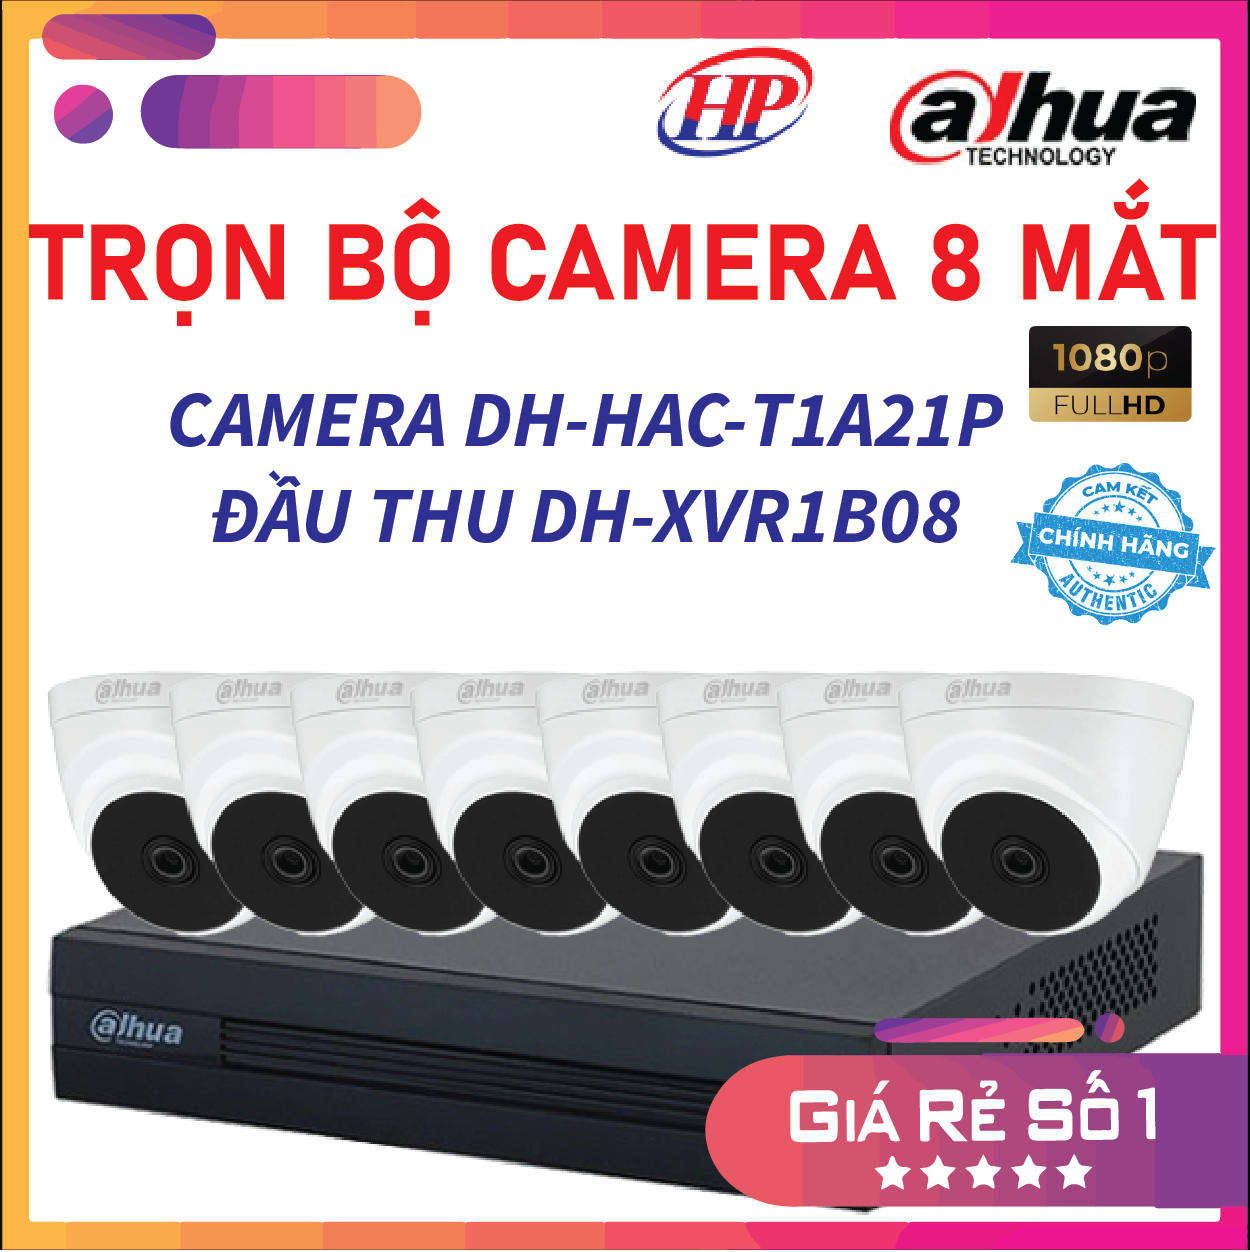 Trọn bộ 8 camera DH-HAC-T1A21P Đầu thu 8 cổng XVR1B08 đầy đủ phụ kiện, Hàng chính hãng